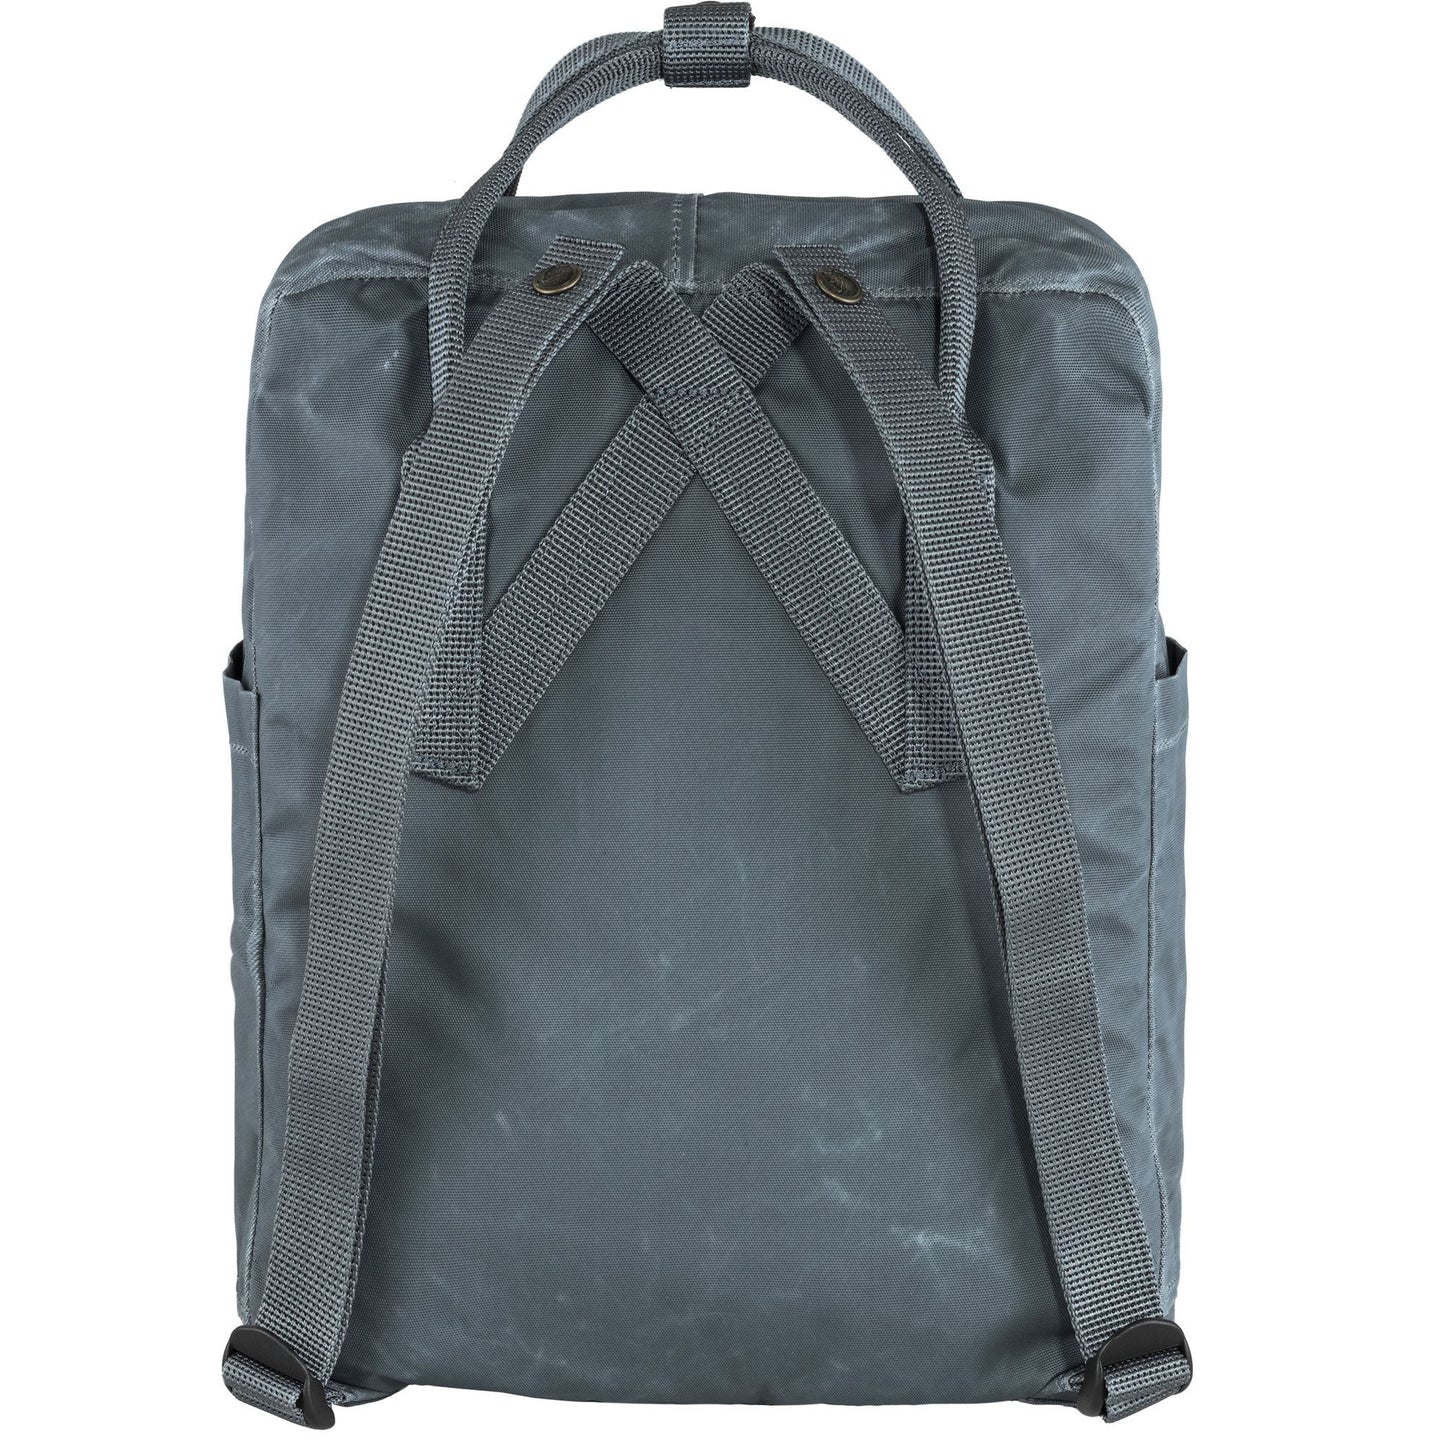 Fjallraven Tree - Kanken 狐狸袋 背囊 書包戶外背包 School bag outdoor backpack 16L - New Moon Blue 23511-551